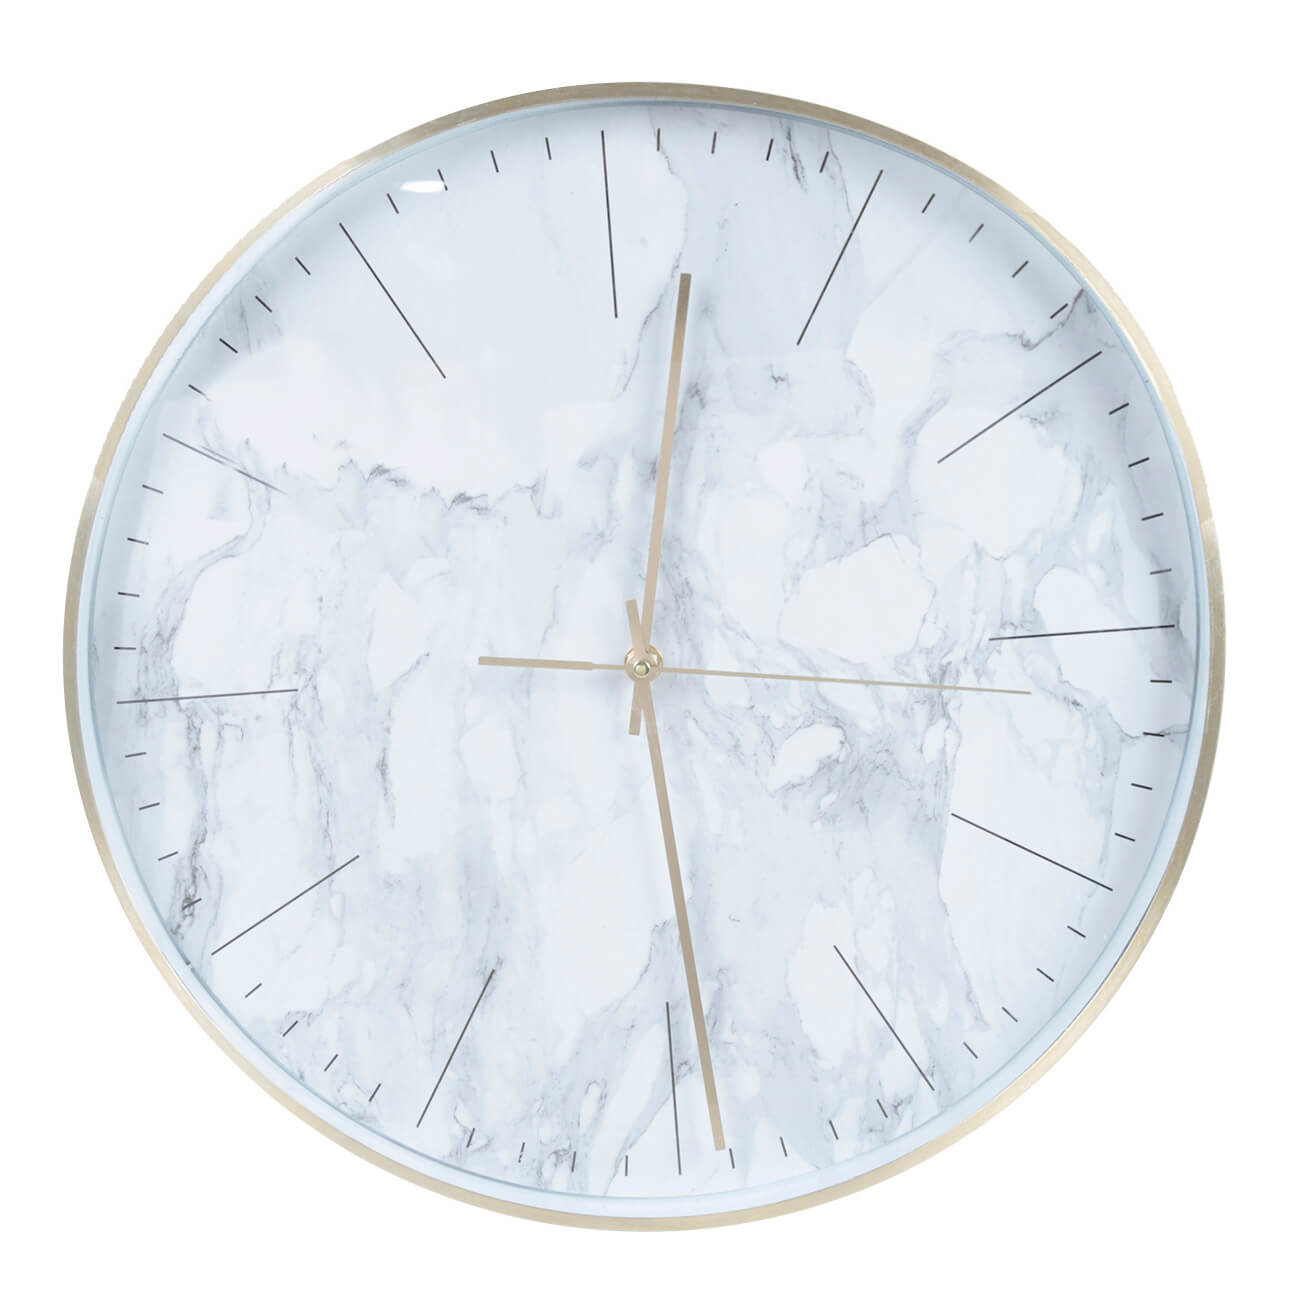 Часы настенные, 40 см, пластик/стекло, круглые, белые, Мрамор, Maniera часы настенные 40 см пластик стекло круглые белые мрамор maniera